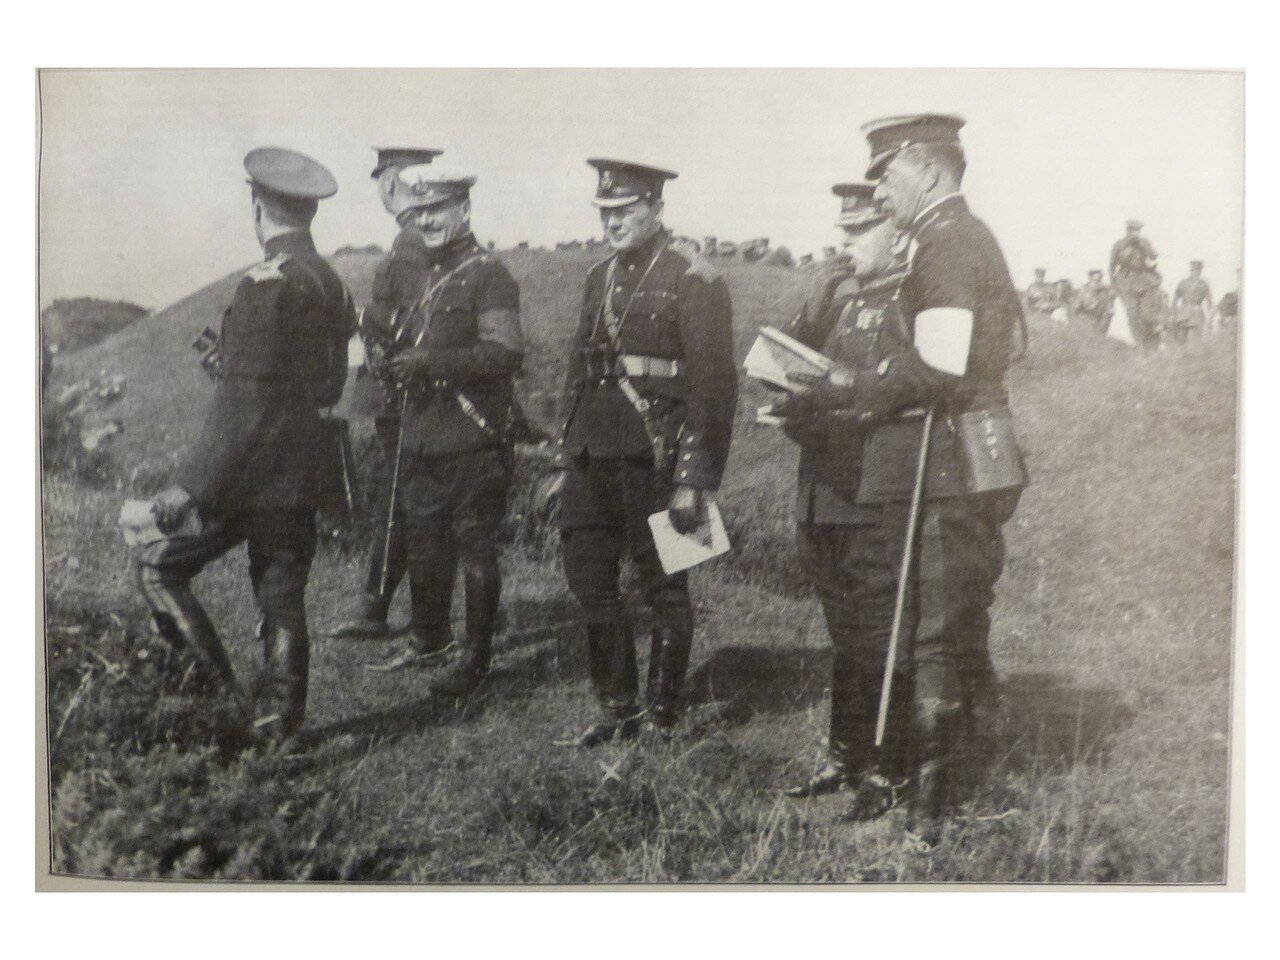 1910. Министр внутренних дел Уинстон Черчилль (третий справа) наблюдает за маневрами в Олдершоте с генералом Френчем (второй справа)